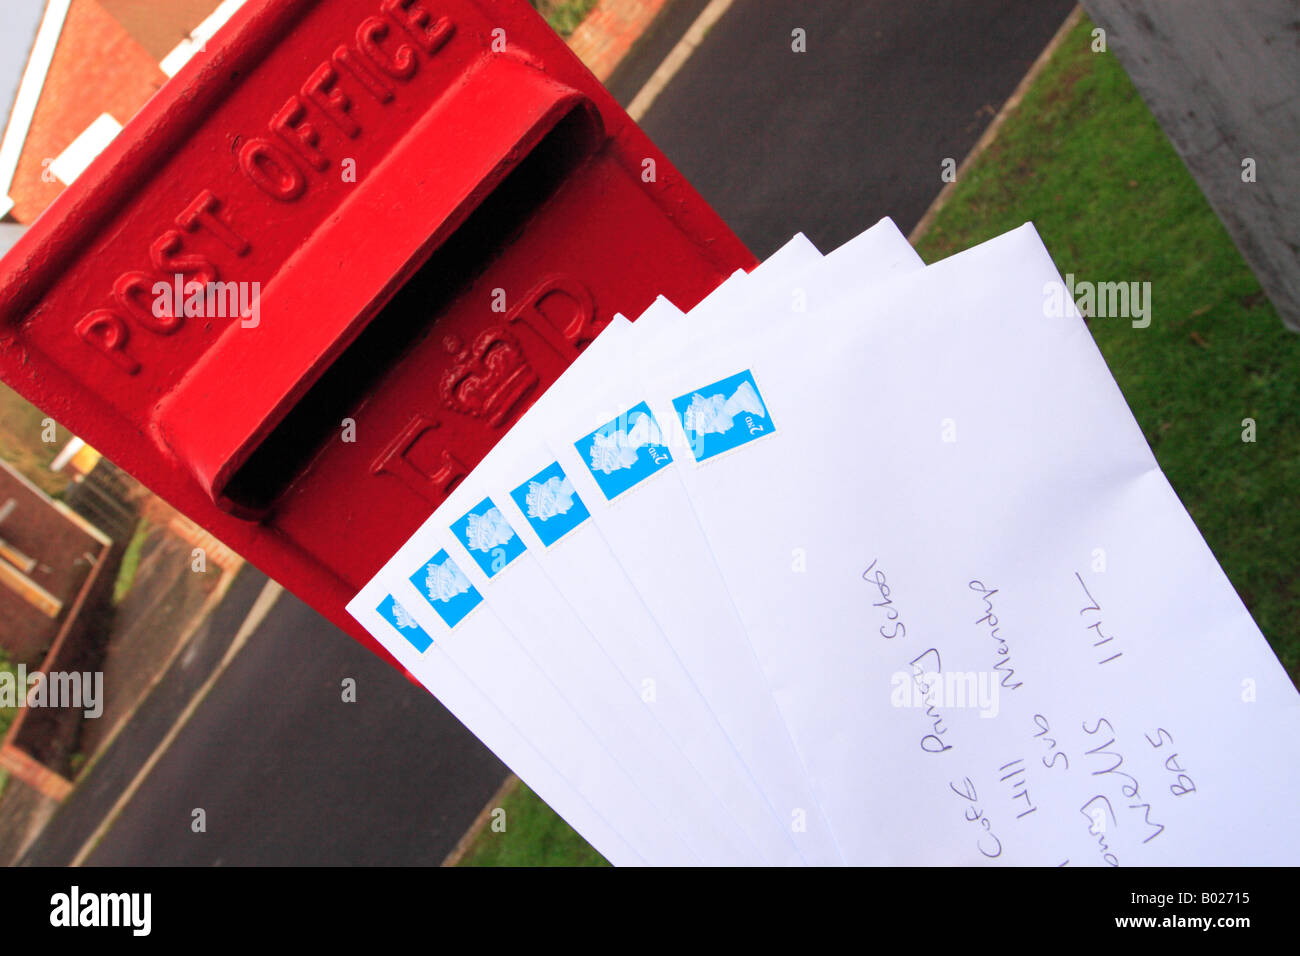 Royal Mail post box avec beaucoup de lettres pour le courrier de deuxième classe de l'affichage Banque D'Images